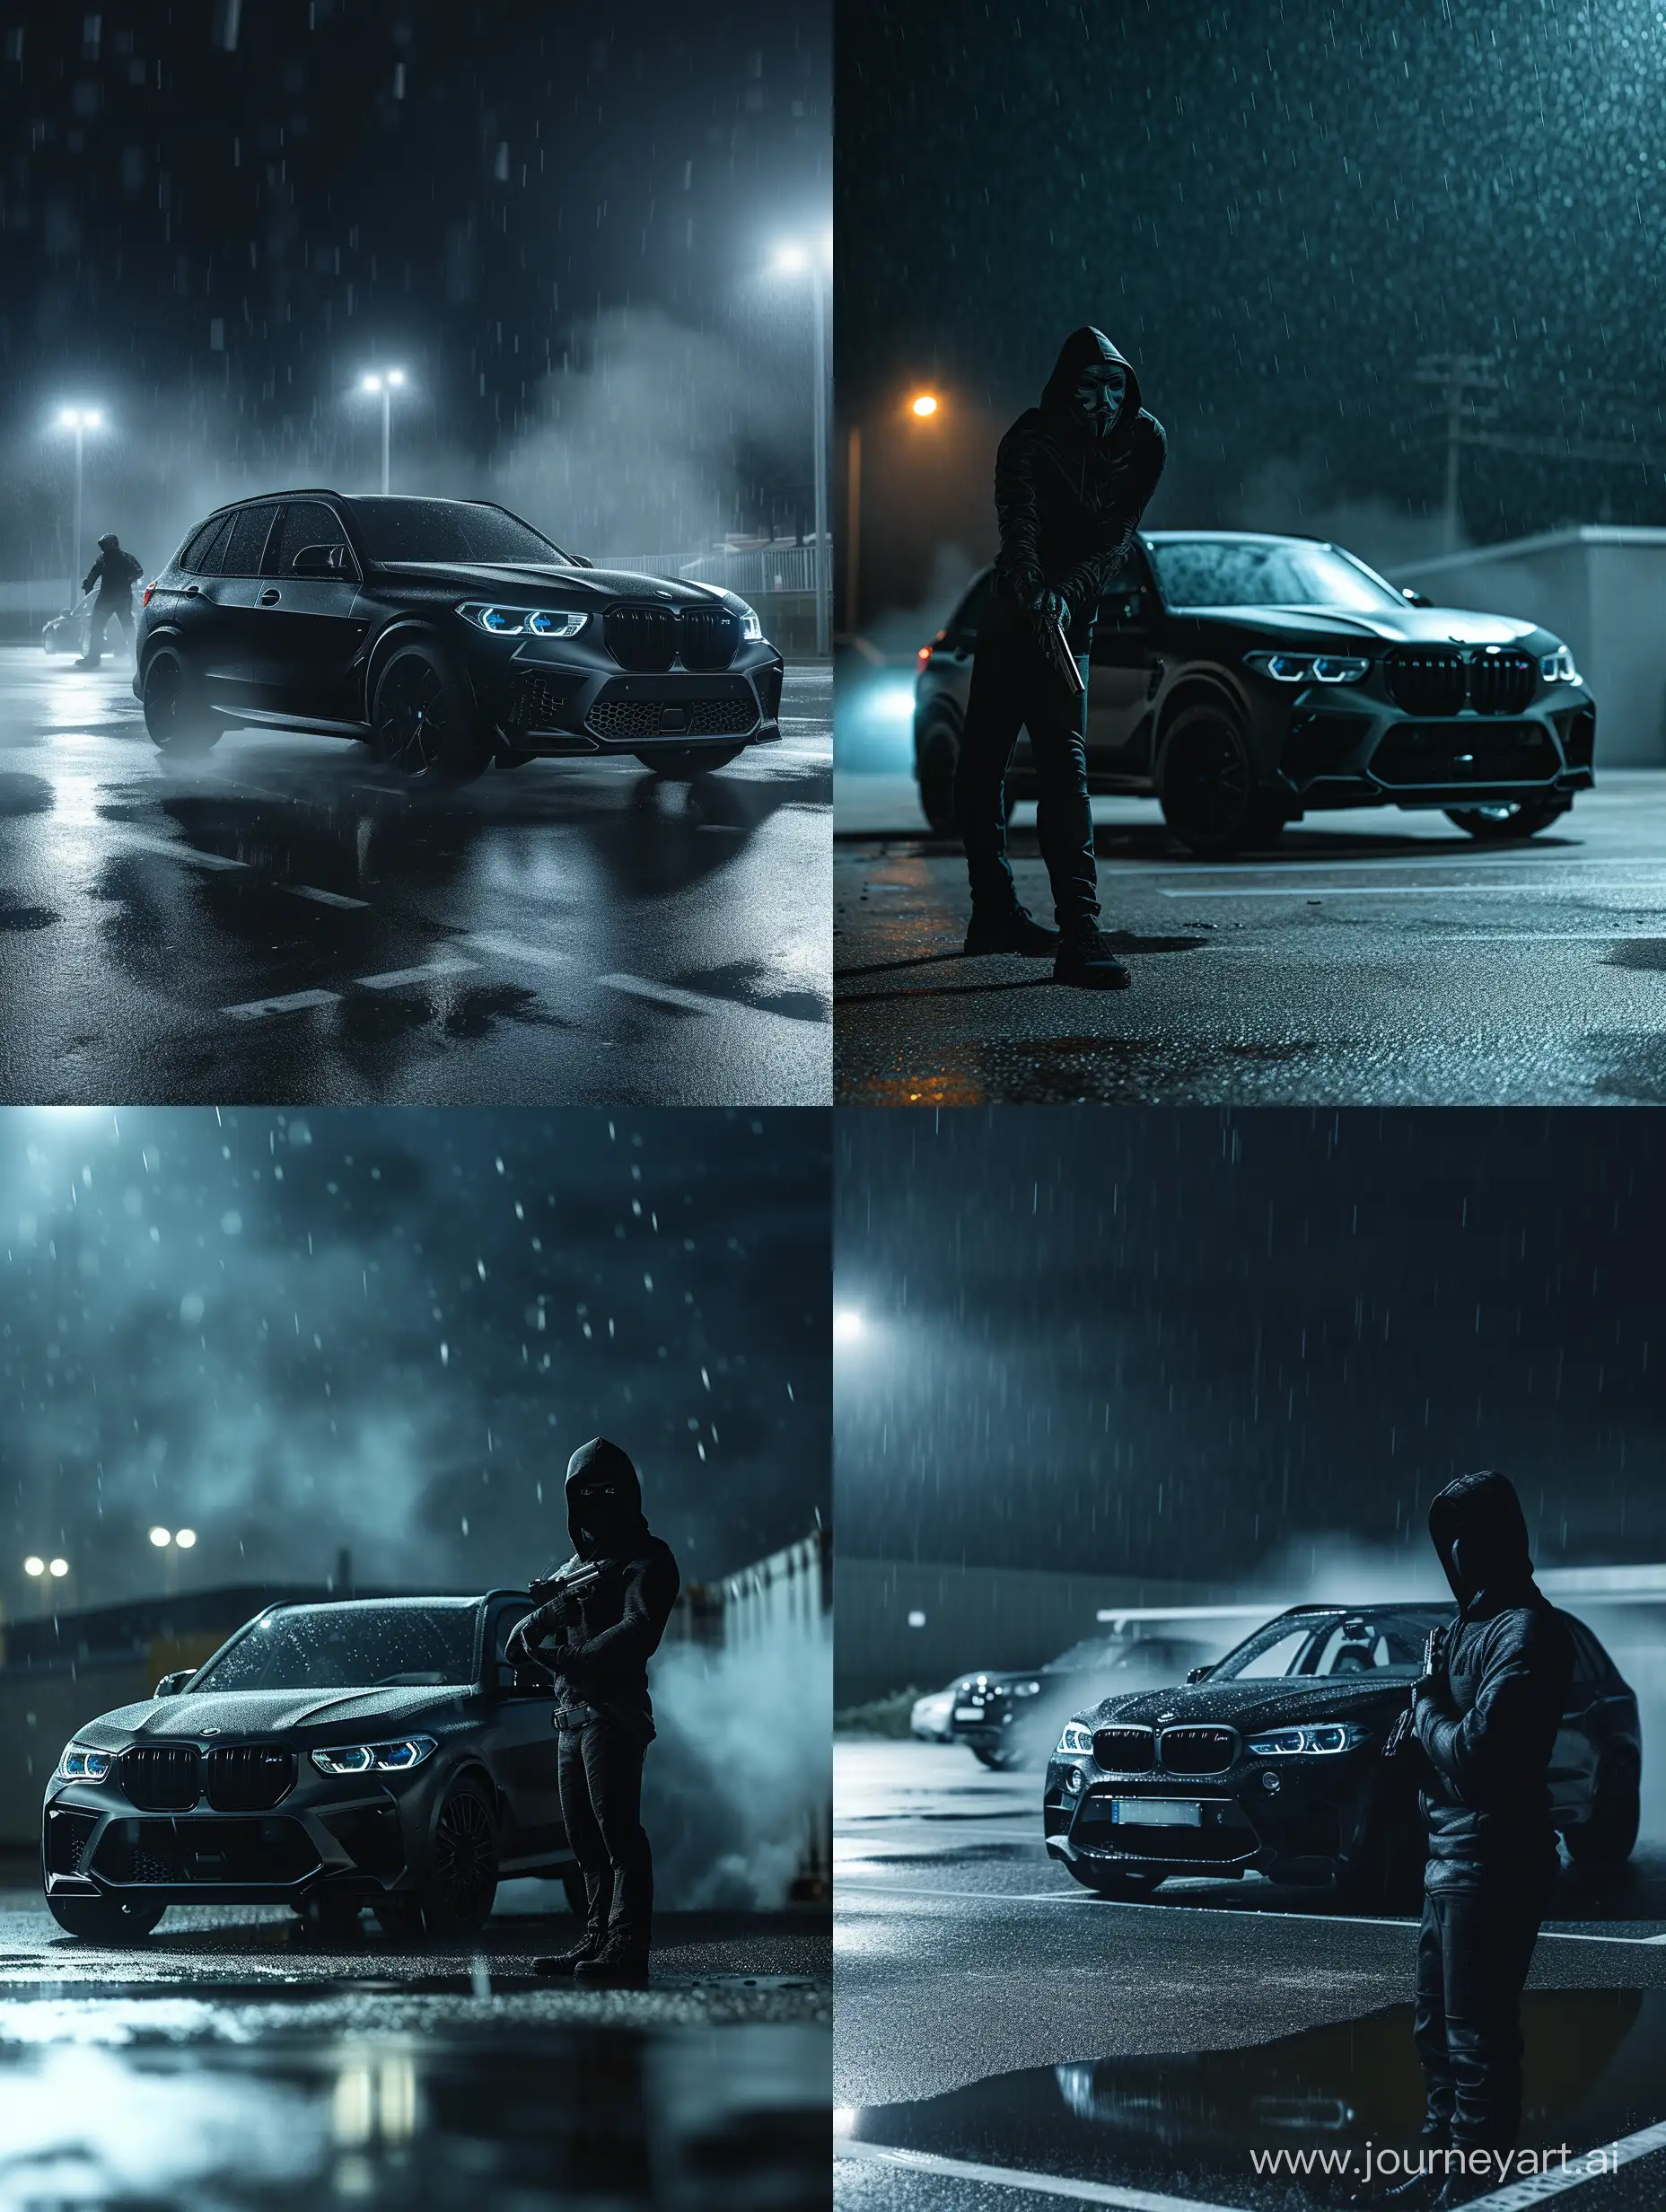 мужчина в черной  маске, с капюшоном наголове, c пистостолетом в руке, стоит ночью на пустыре в дождливую погоду,позади bmw x5m черного цвета,вокруг туман,кинематографическая эстетика hd HQ 8K